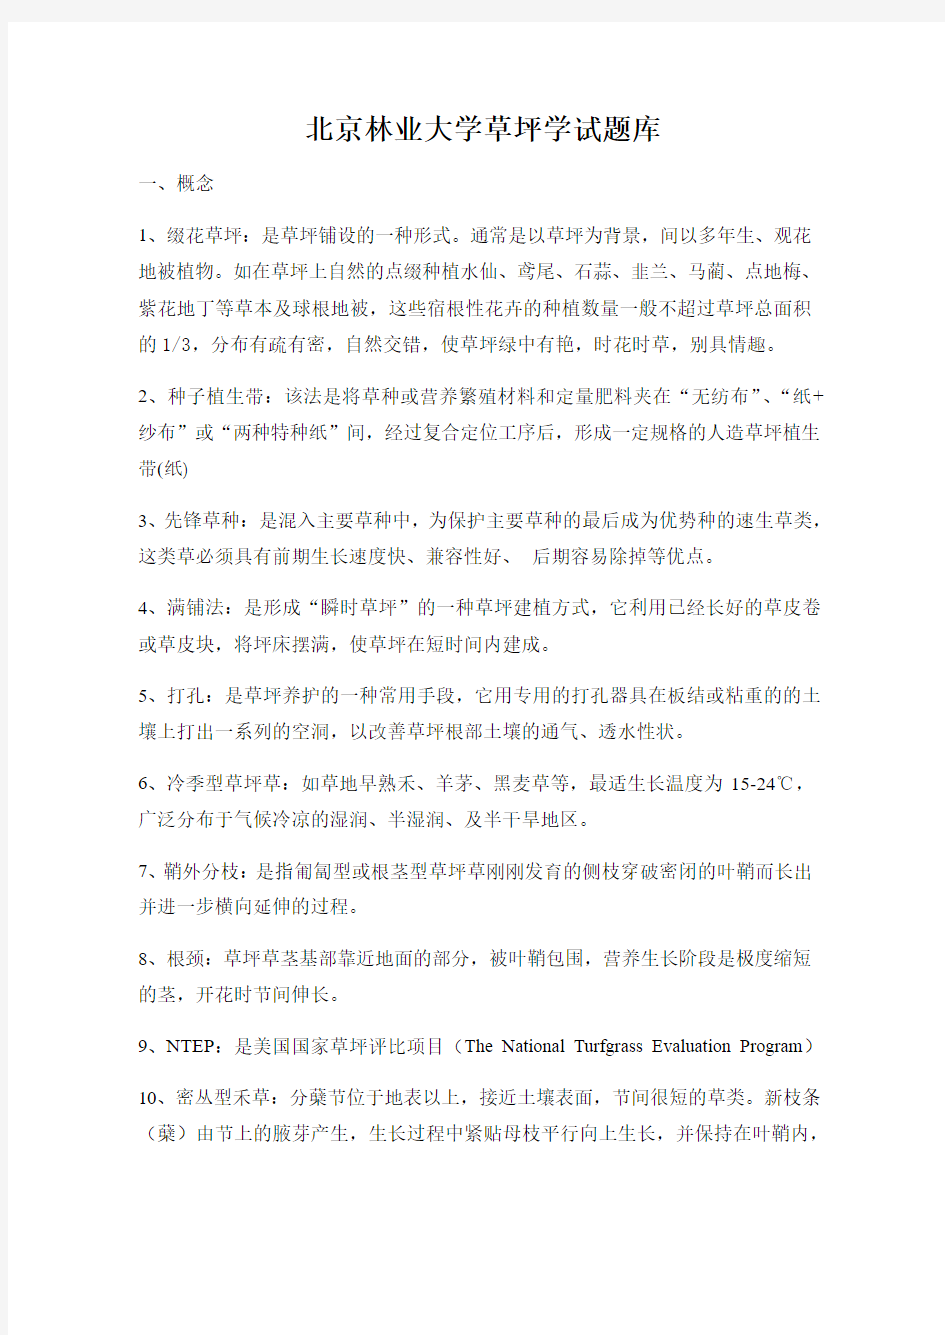 北京林业大学草坪学试题库 直接打印 